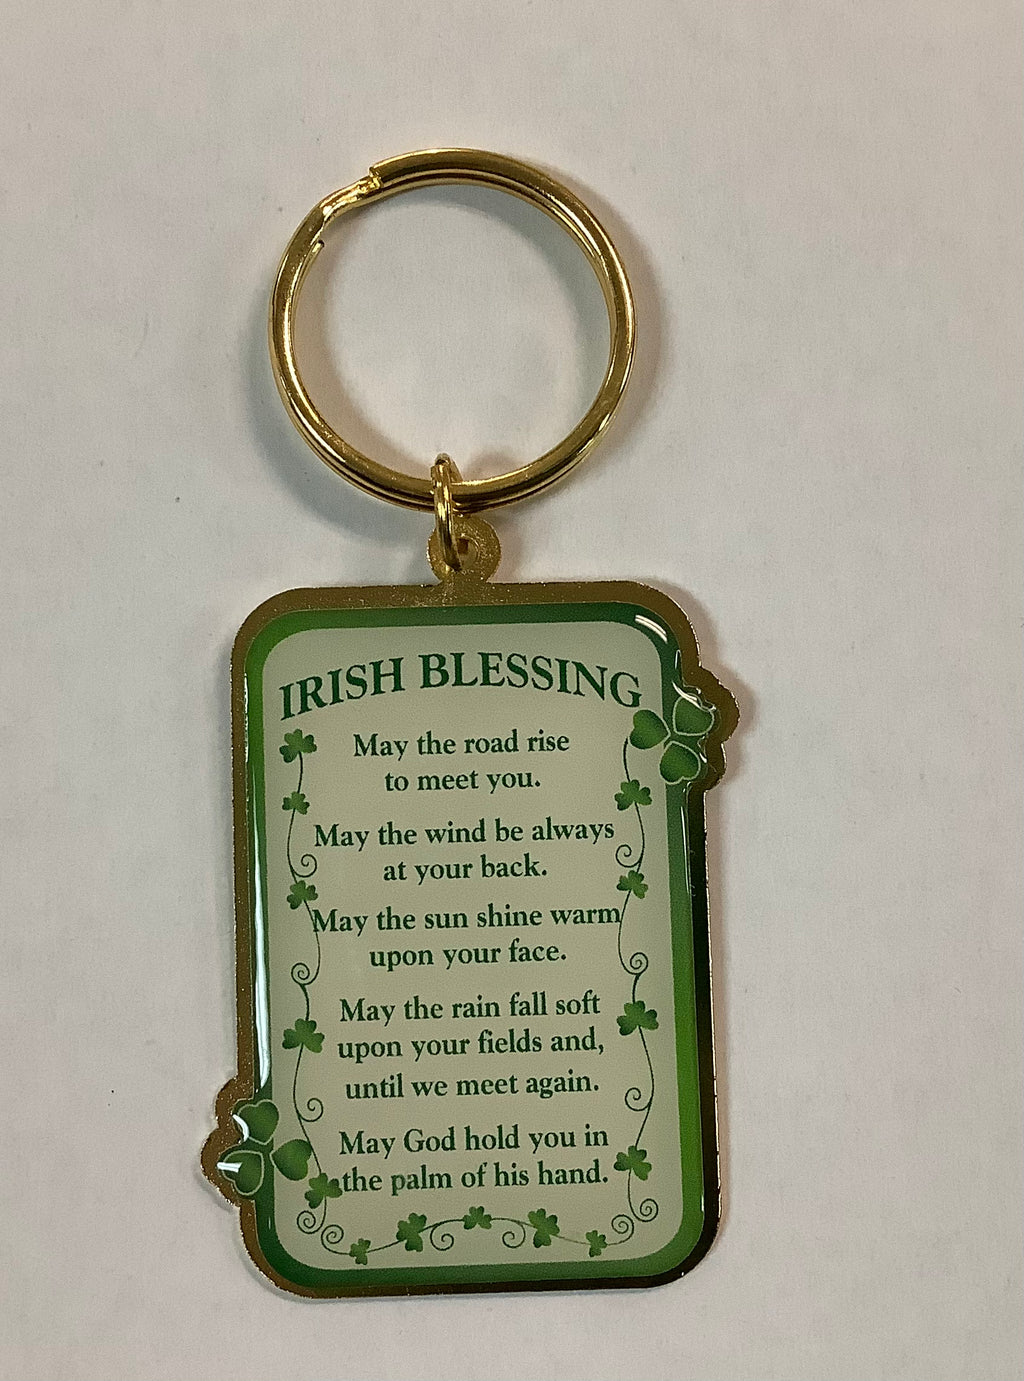 Irish blessing keychain